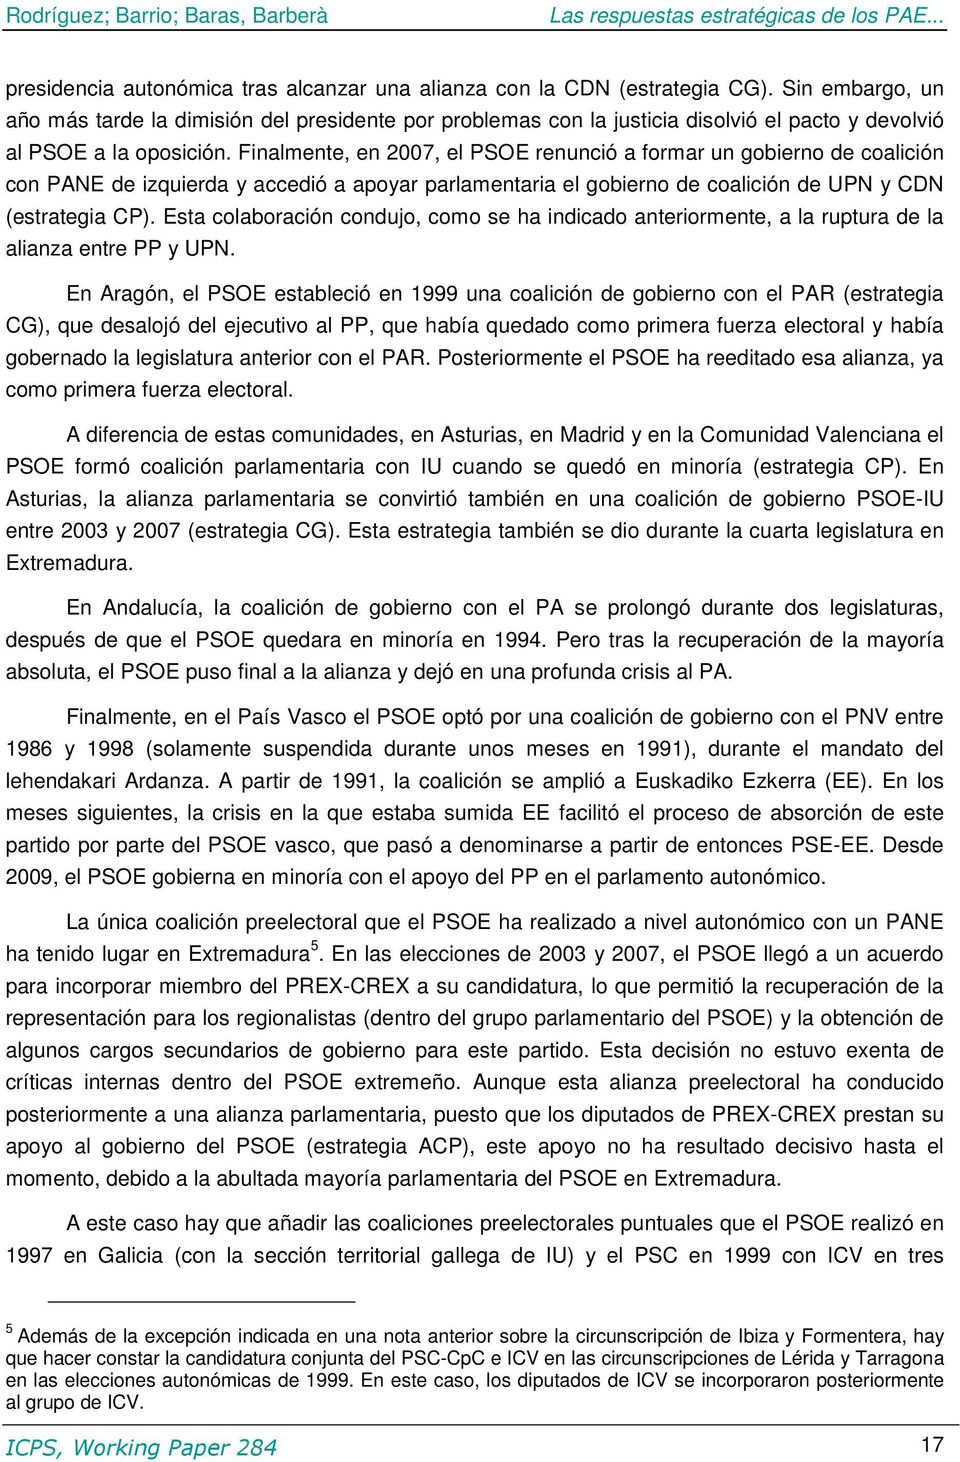 Finalmente, en 2007, el PSOE renunció a formar un gobierno de coalición con PANE de izquierda y accedió a apoyar parlamentaria el gobierno de coalición de UPN y CDN (estrategia CP).